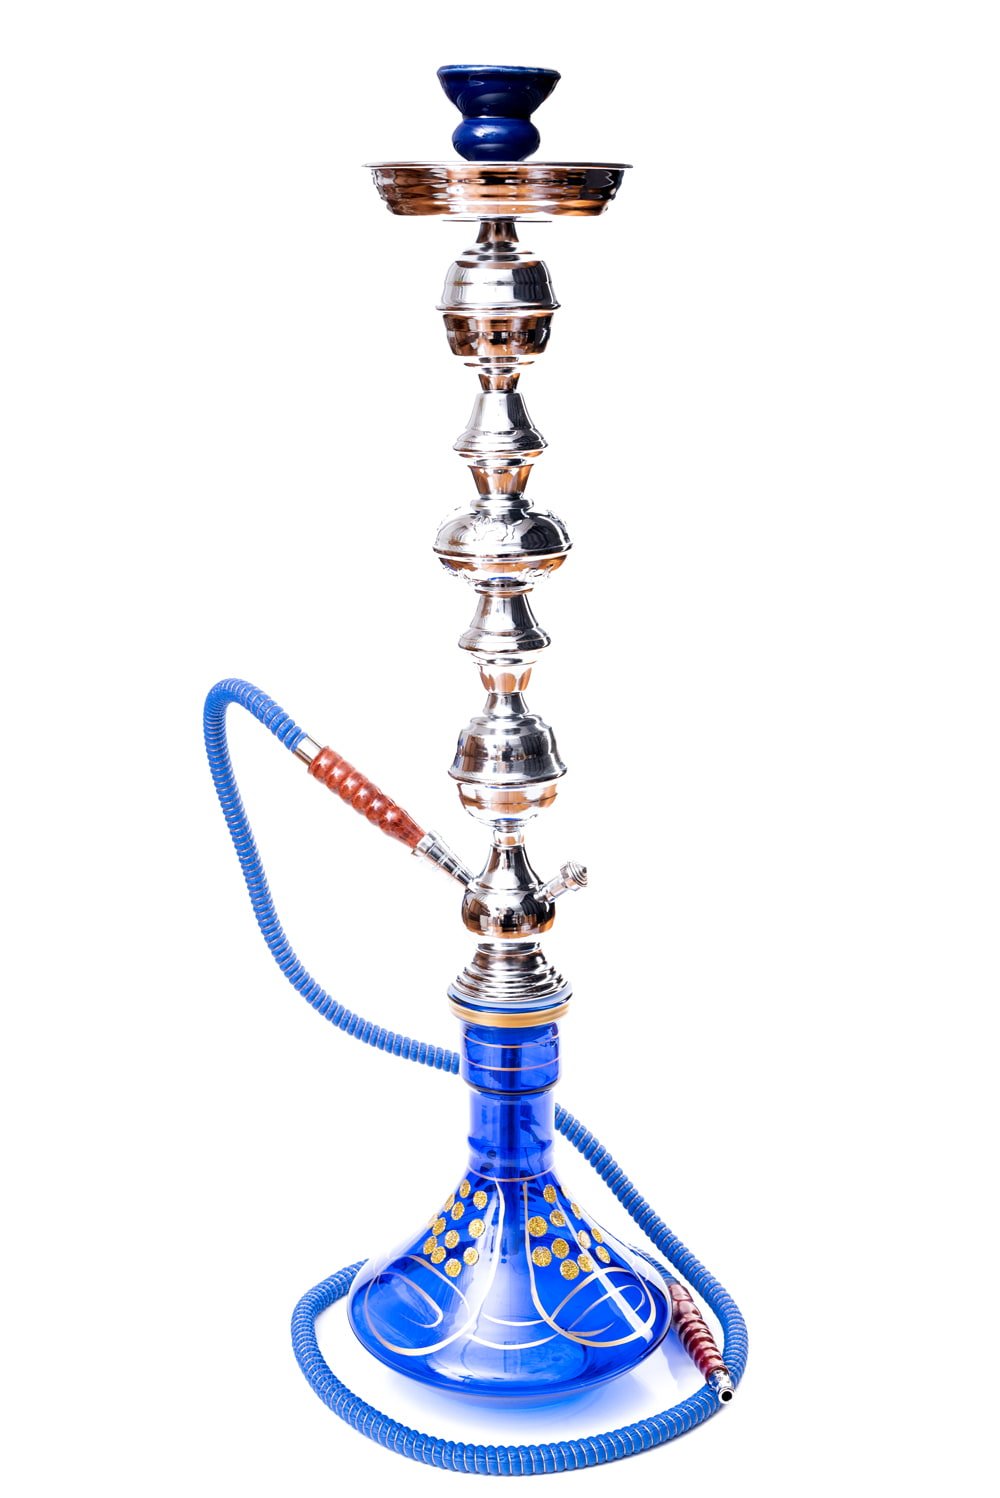 ポコポコポ 送料無料 シーシャ 水タバコ 水パイプ 水煙管 シーシャ(水タバコ)青(約76cm) フッカー ナルギレ フレーバー :GNJ